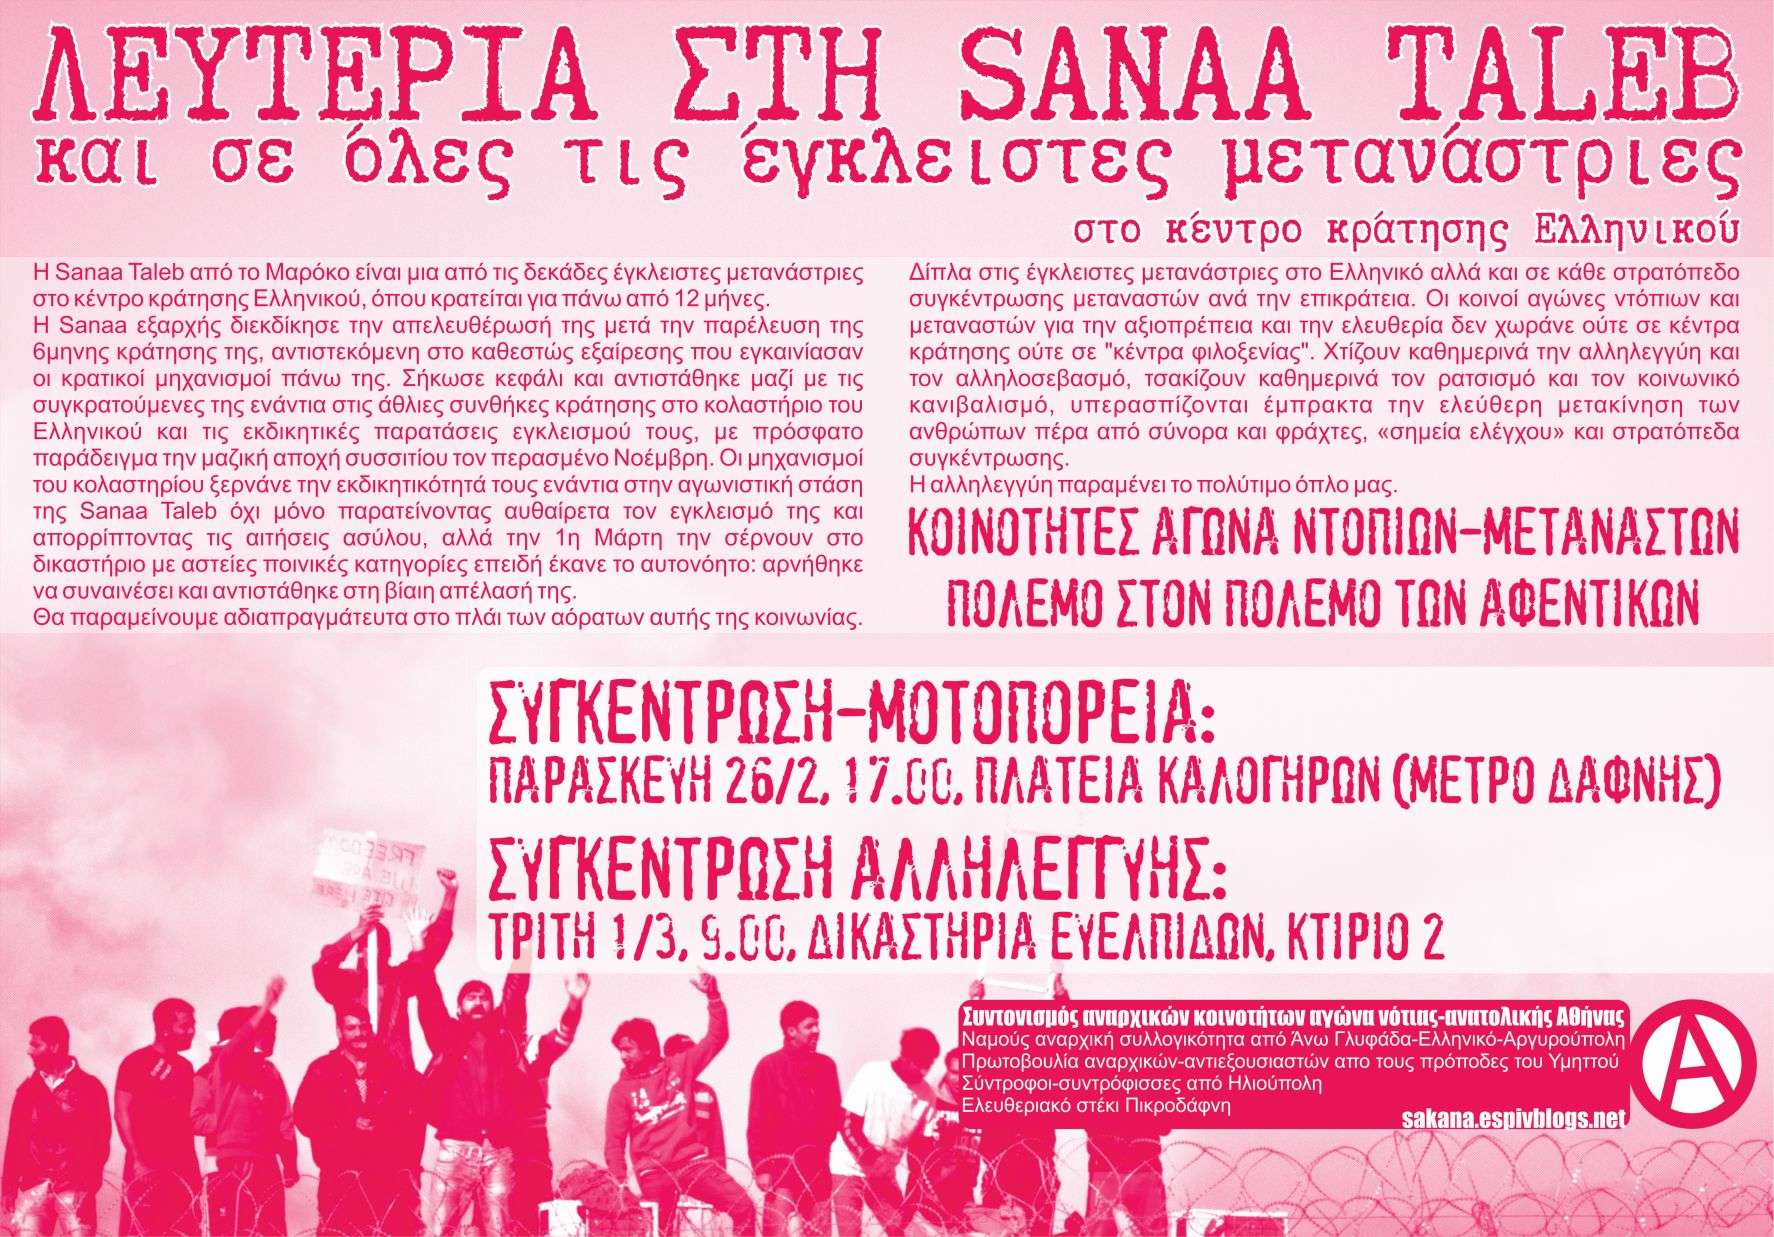 Λευτεριά στη Sanaa Taleb – Συγκέντρωση αλληλεγγύης Τρίτη 01/03 Δικαστήρια Ευελπίδων